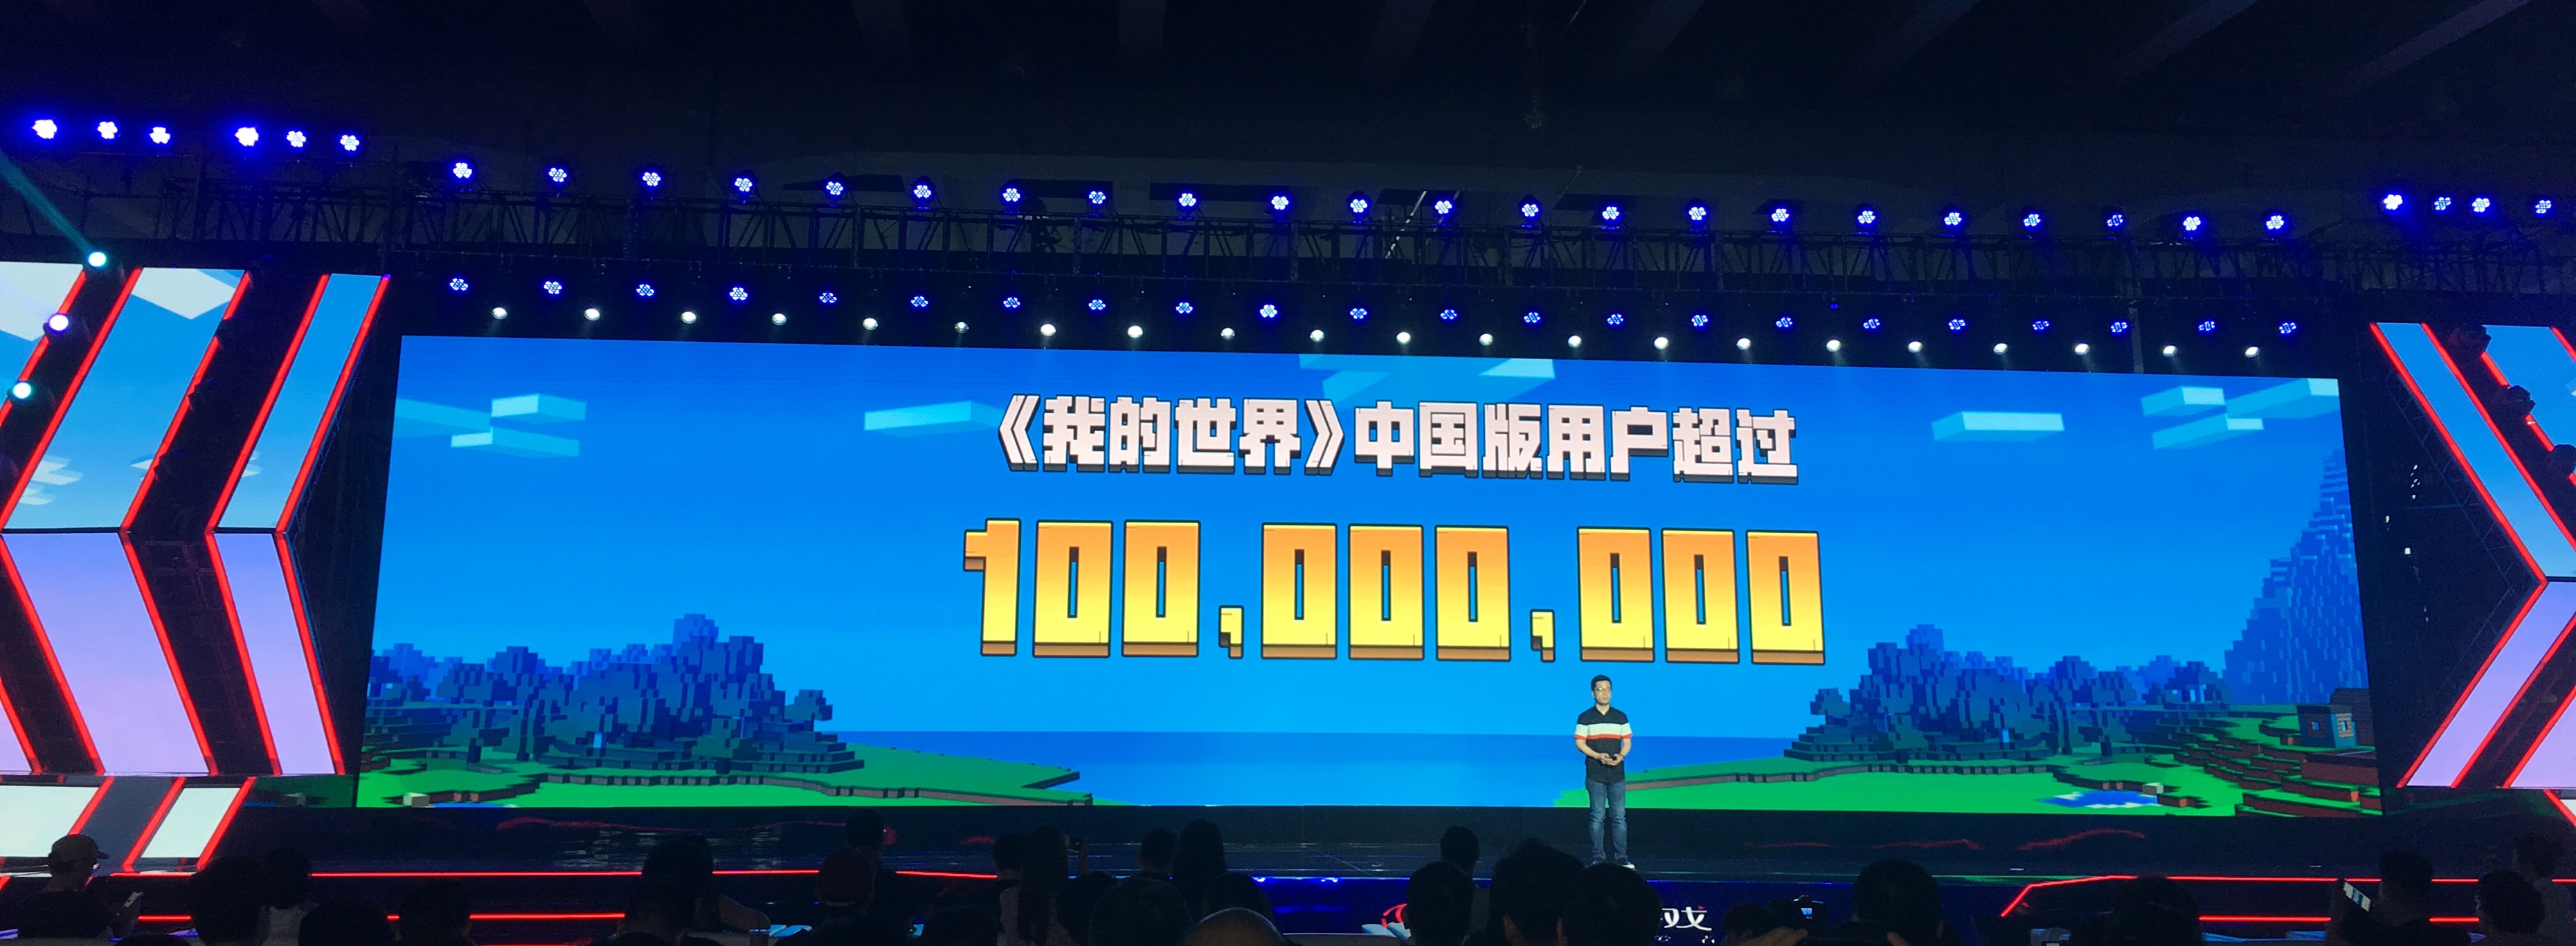 网易520发布会 《我的世界》中国版超一亿用户